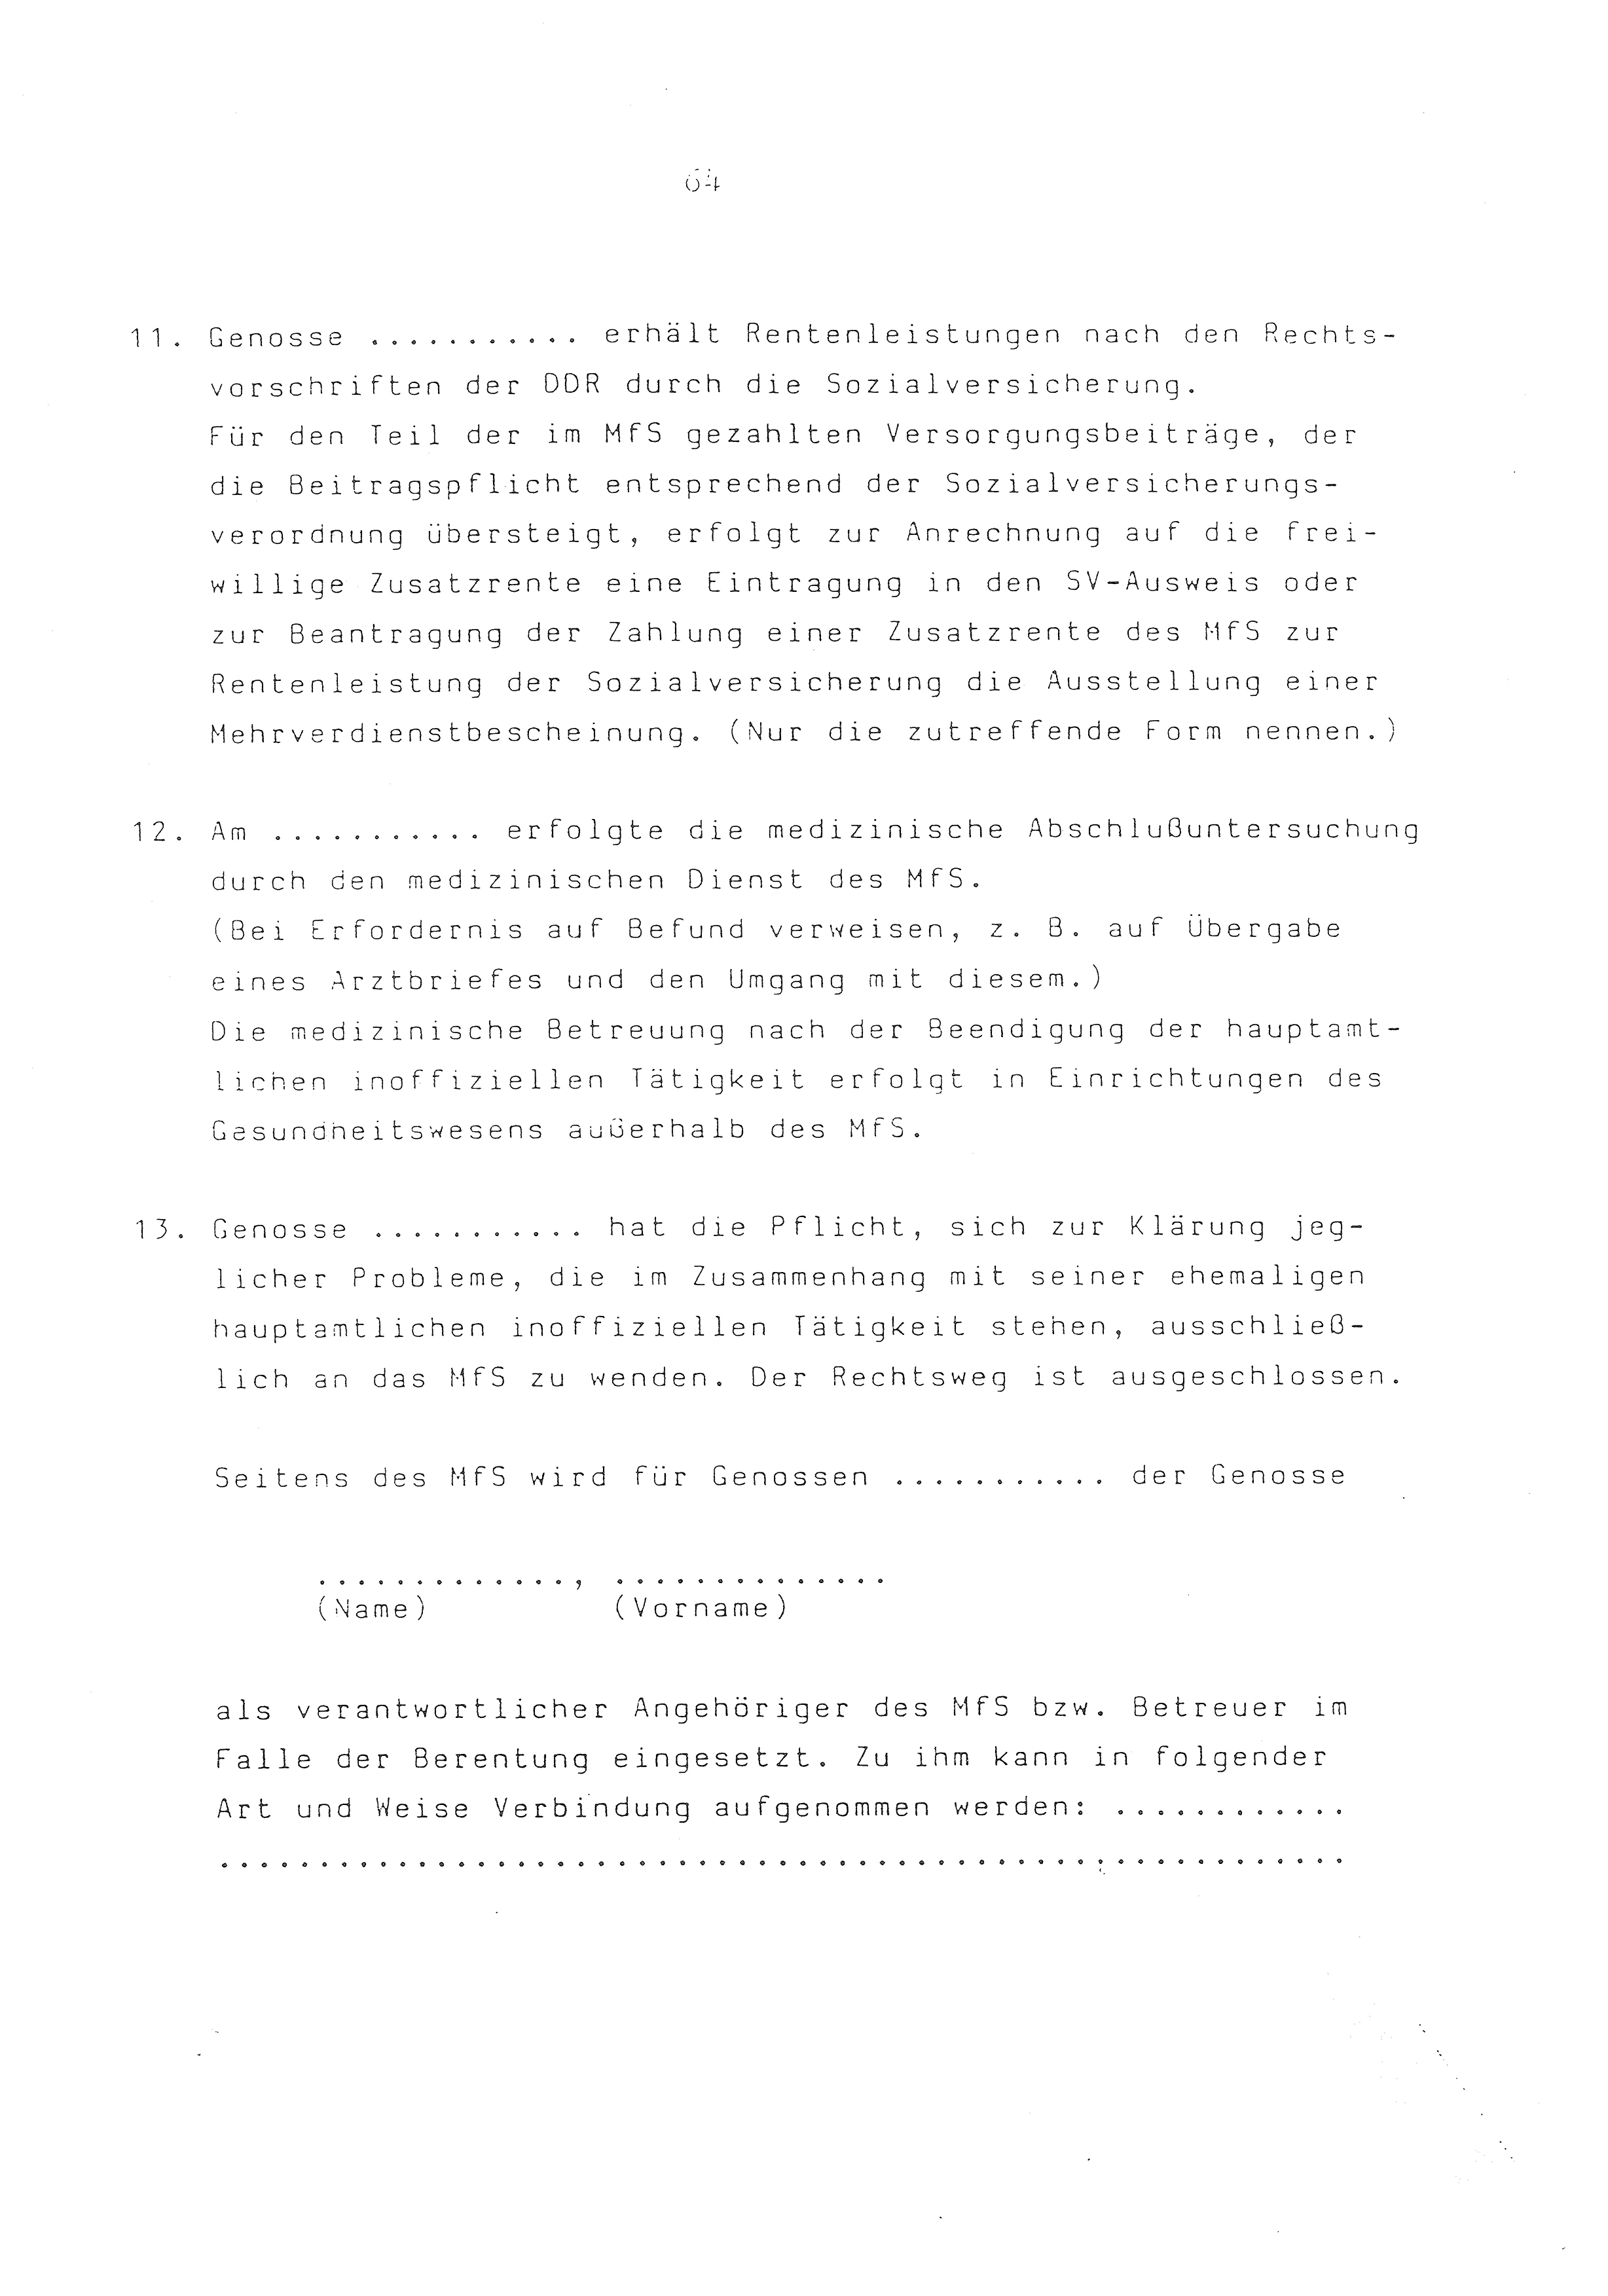 2. Durchführungsbestimmung zur Richtlinie 1/79 über die Arbeit mit hauptamtlichen Mitarbeitern des MfS (HIM), Deutsche Demokratische Republik (DDR), Ministerium für Staatssicherheit (MfS), Der Minister (Mielke), Geheime Verschlußsache (GVS) ooo8-44/86, Berlin 1986, Seite 64 (2. DB RL 1/79 DDR MfS Min. GVS ooo8-44/86 1986, S. 64)